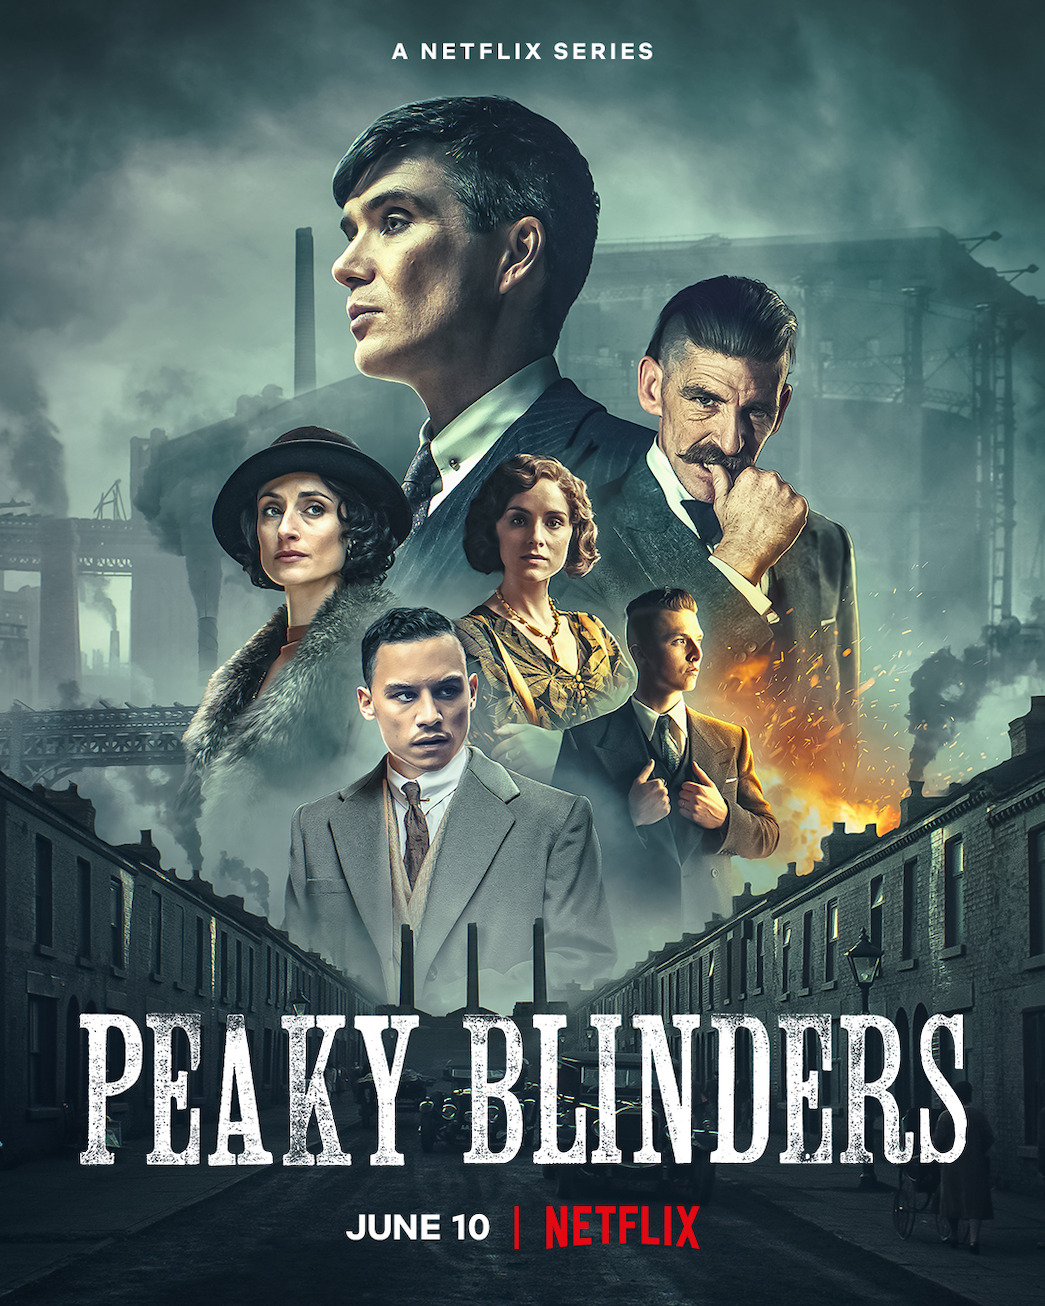 Peaky Blinders Series 6 Cast: New Characters, Conrad Khan, Stephen